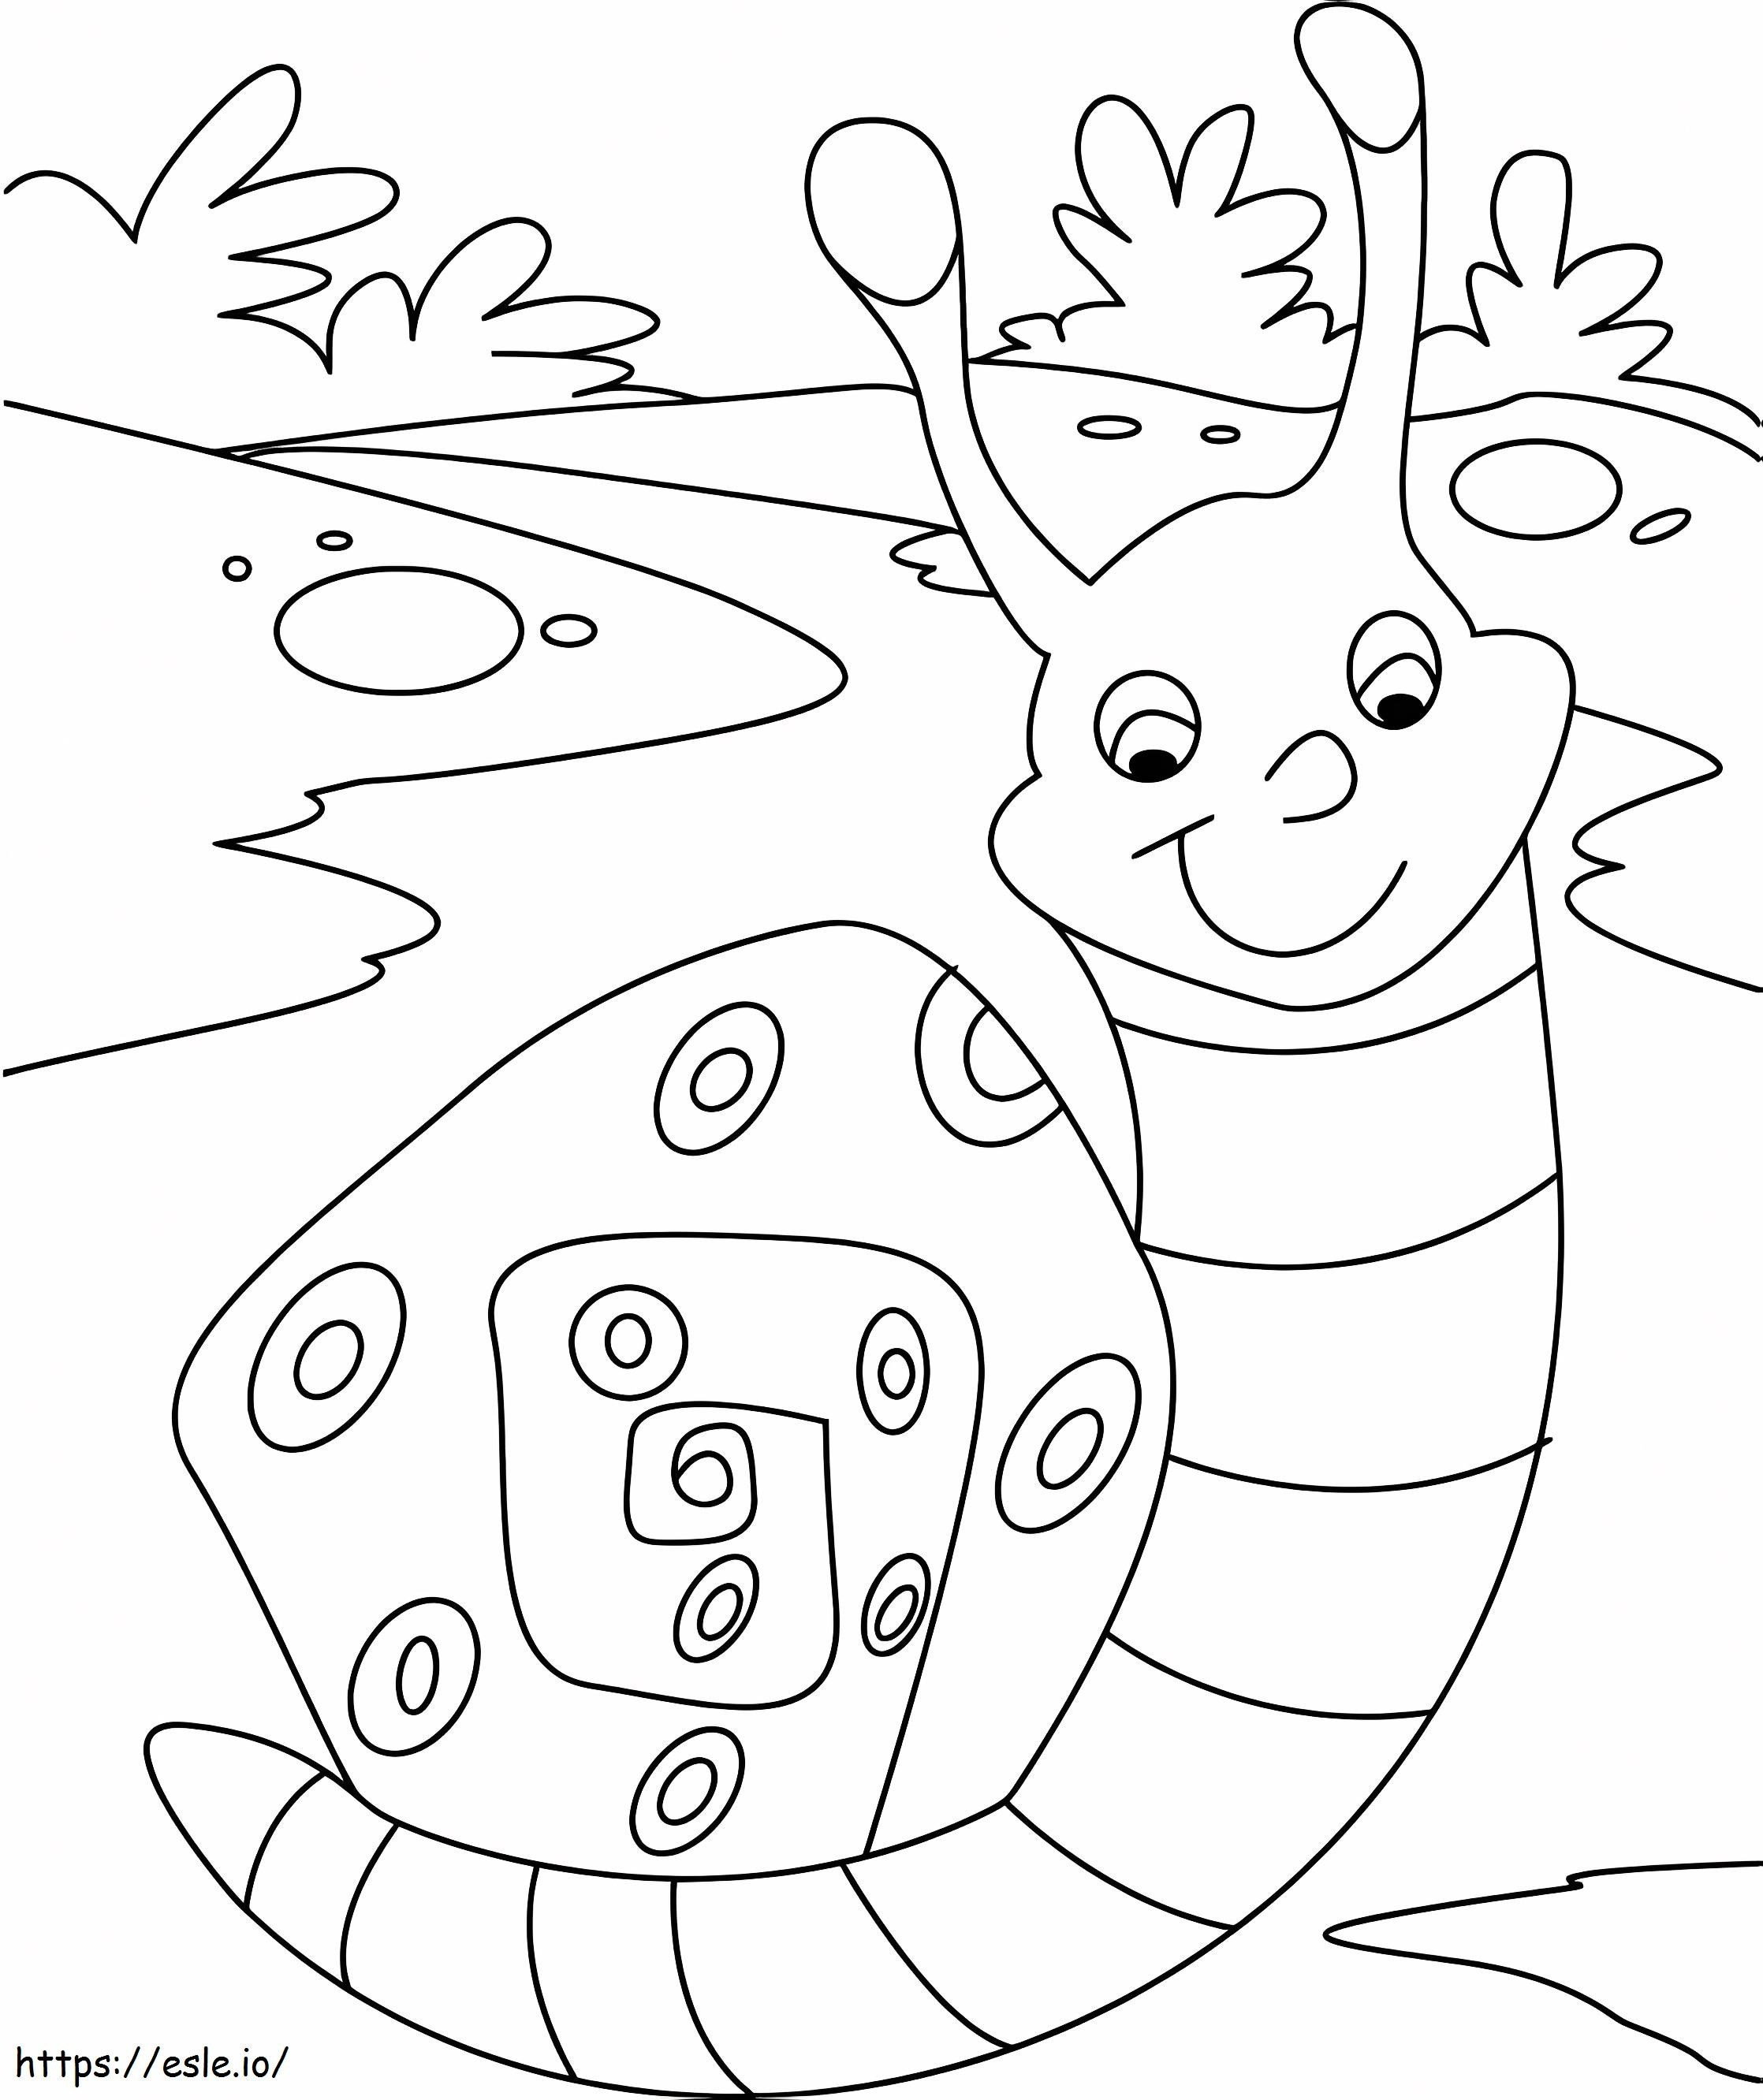 Kawaii Snail coloring page